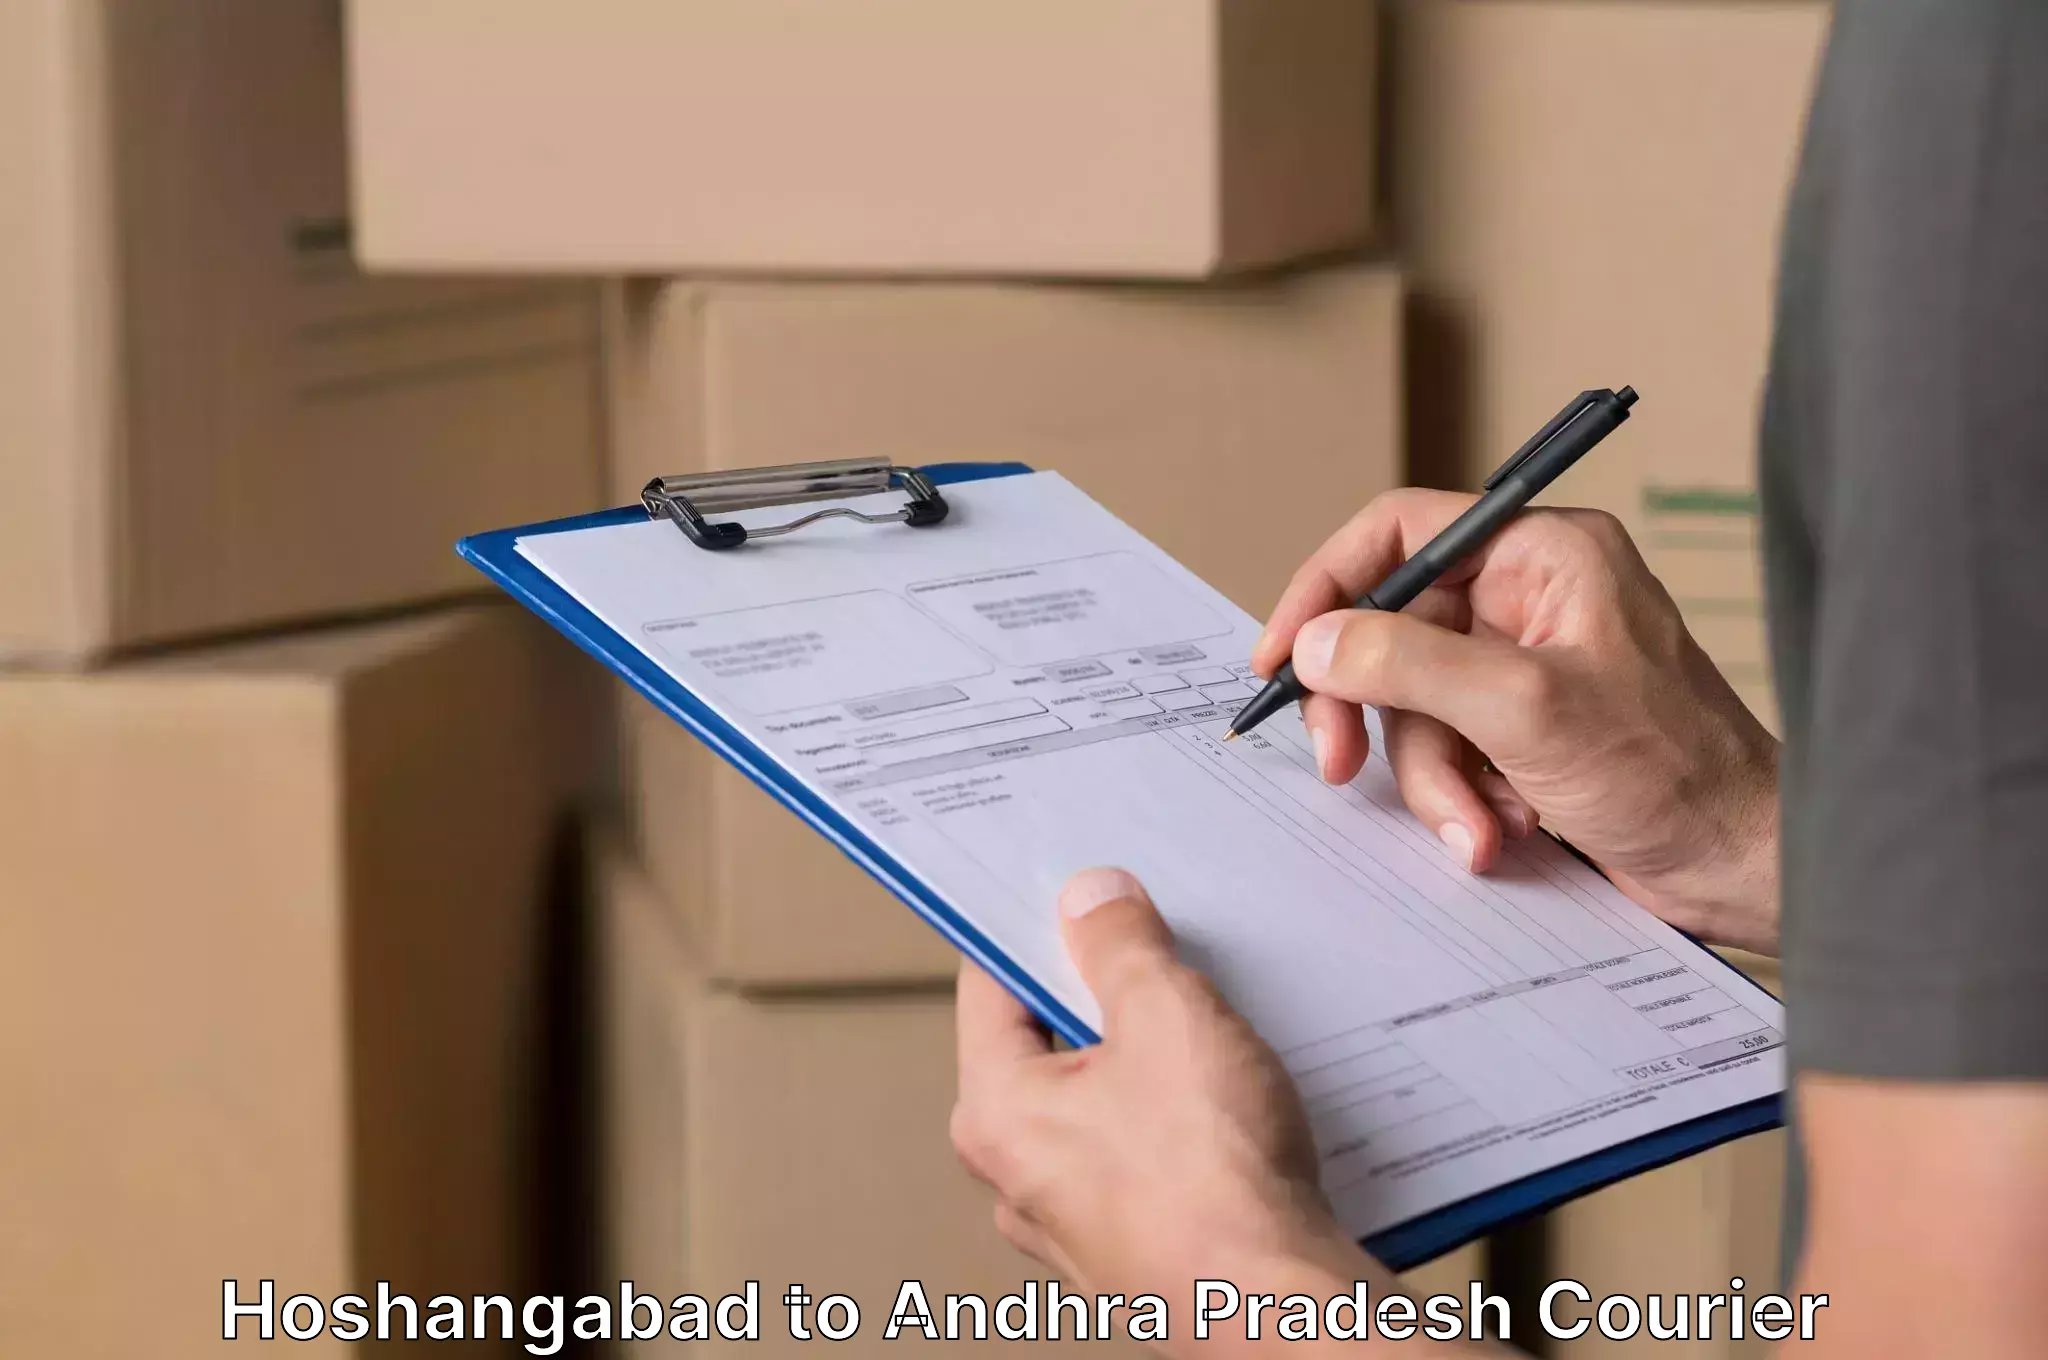 Household moving companies Hoshangabad to Gopalapatnam